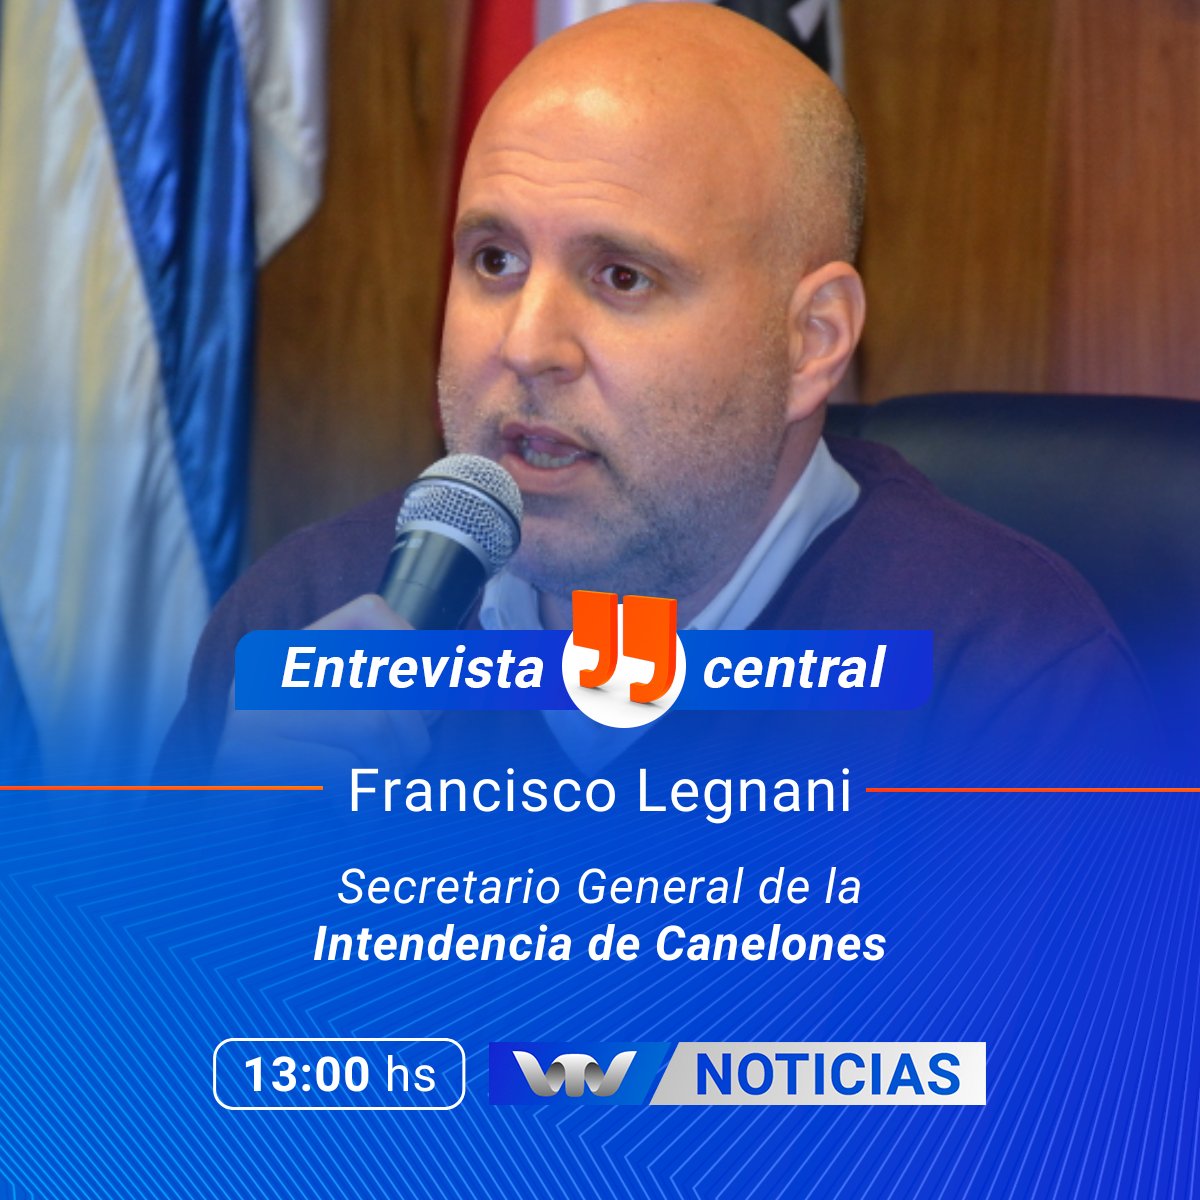 #Entrevista 

🗣️ Hoy a partir de las 13 hs. en #VTVNoticias recibimos al Secretario General de la @IdCanelones, @FLegnaniSilva